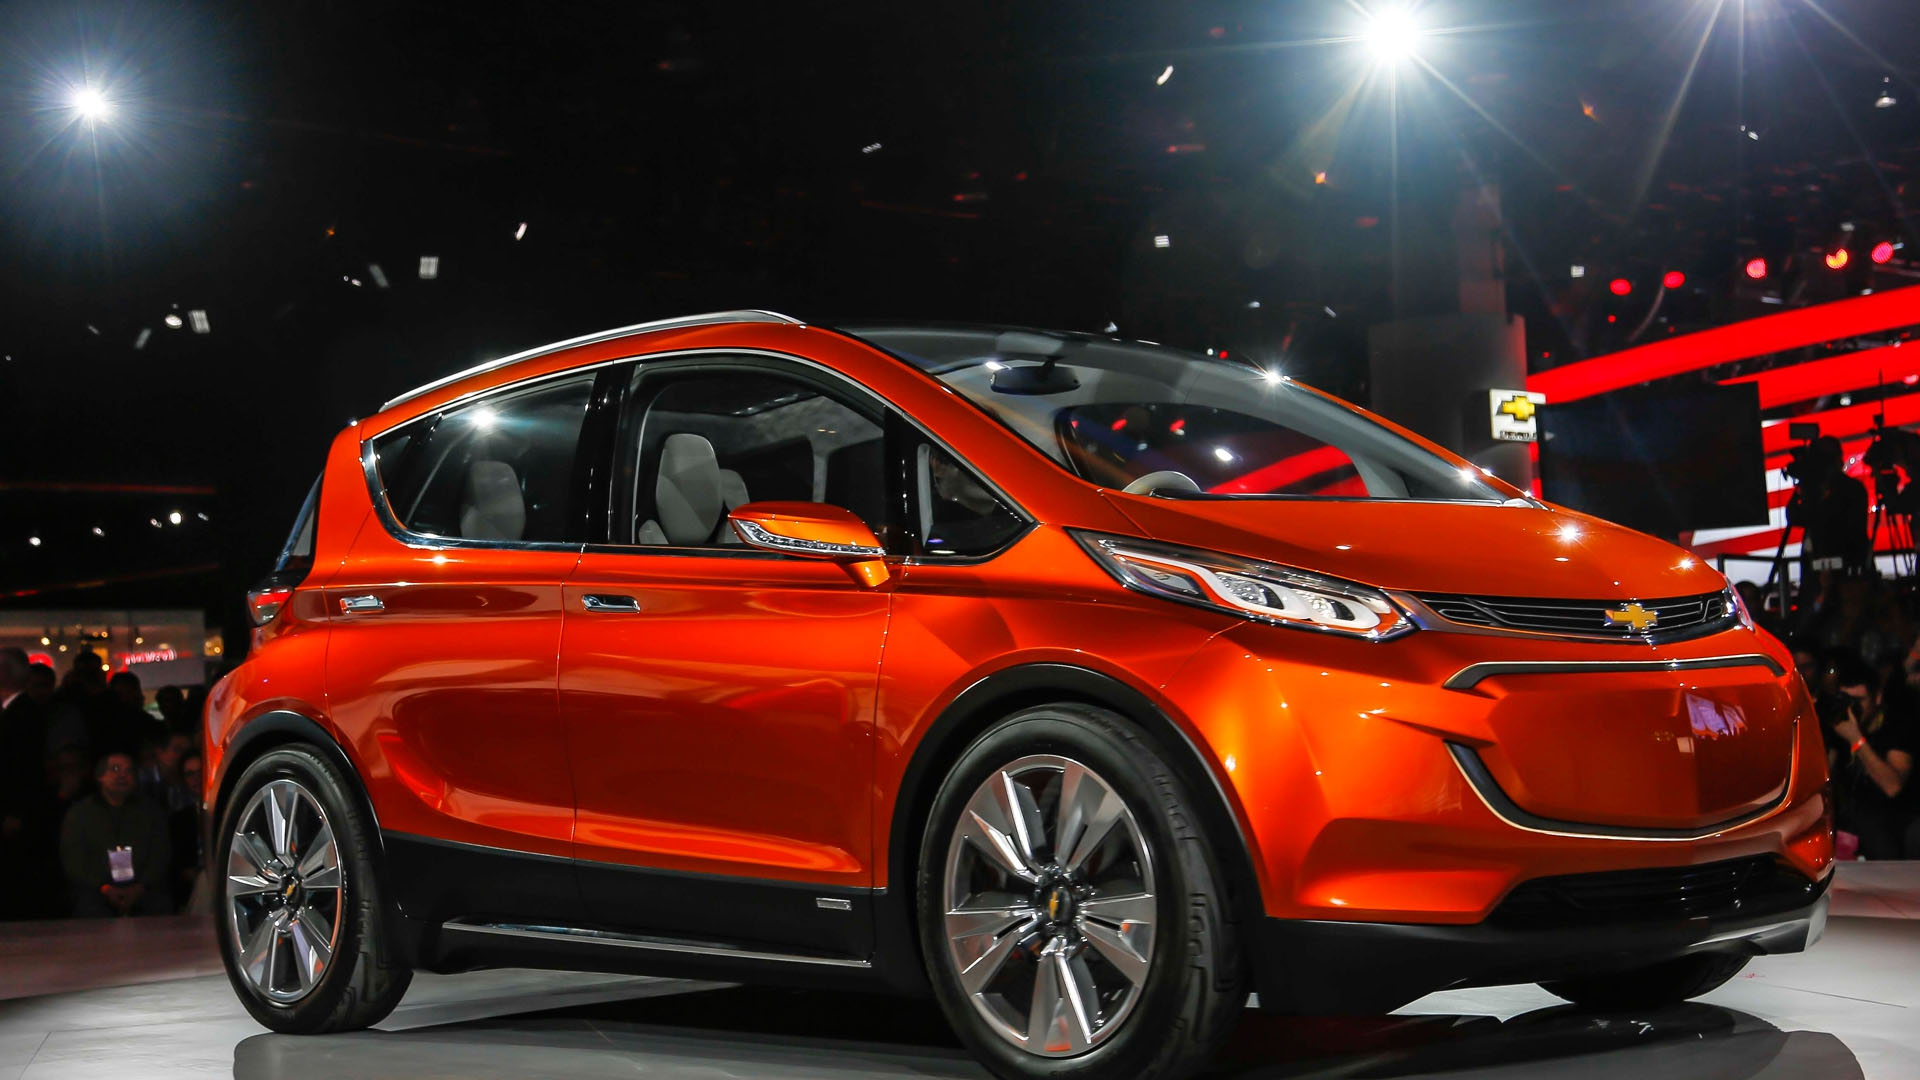 El carro eléctrico de la marca Chevrolet estará disponible a finales de este año